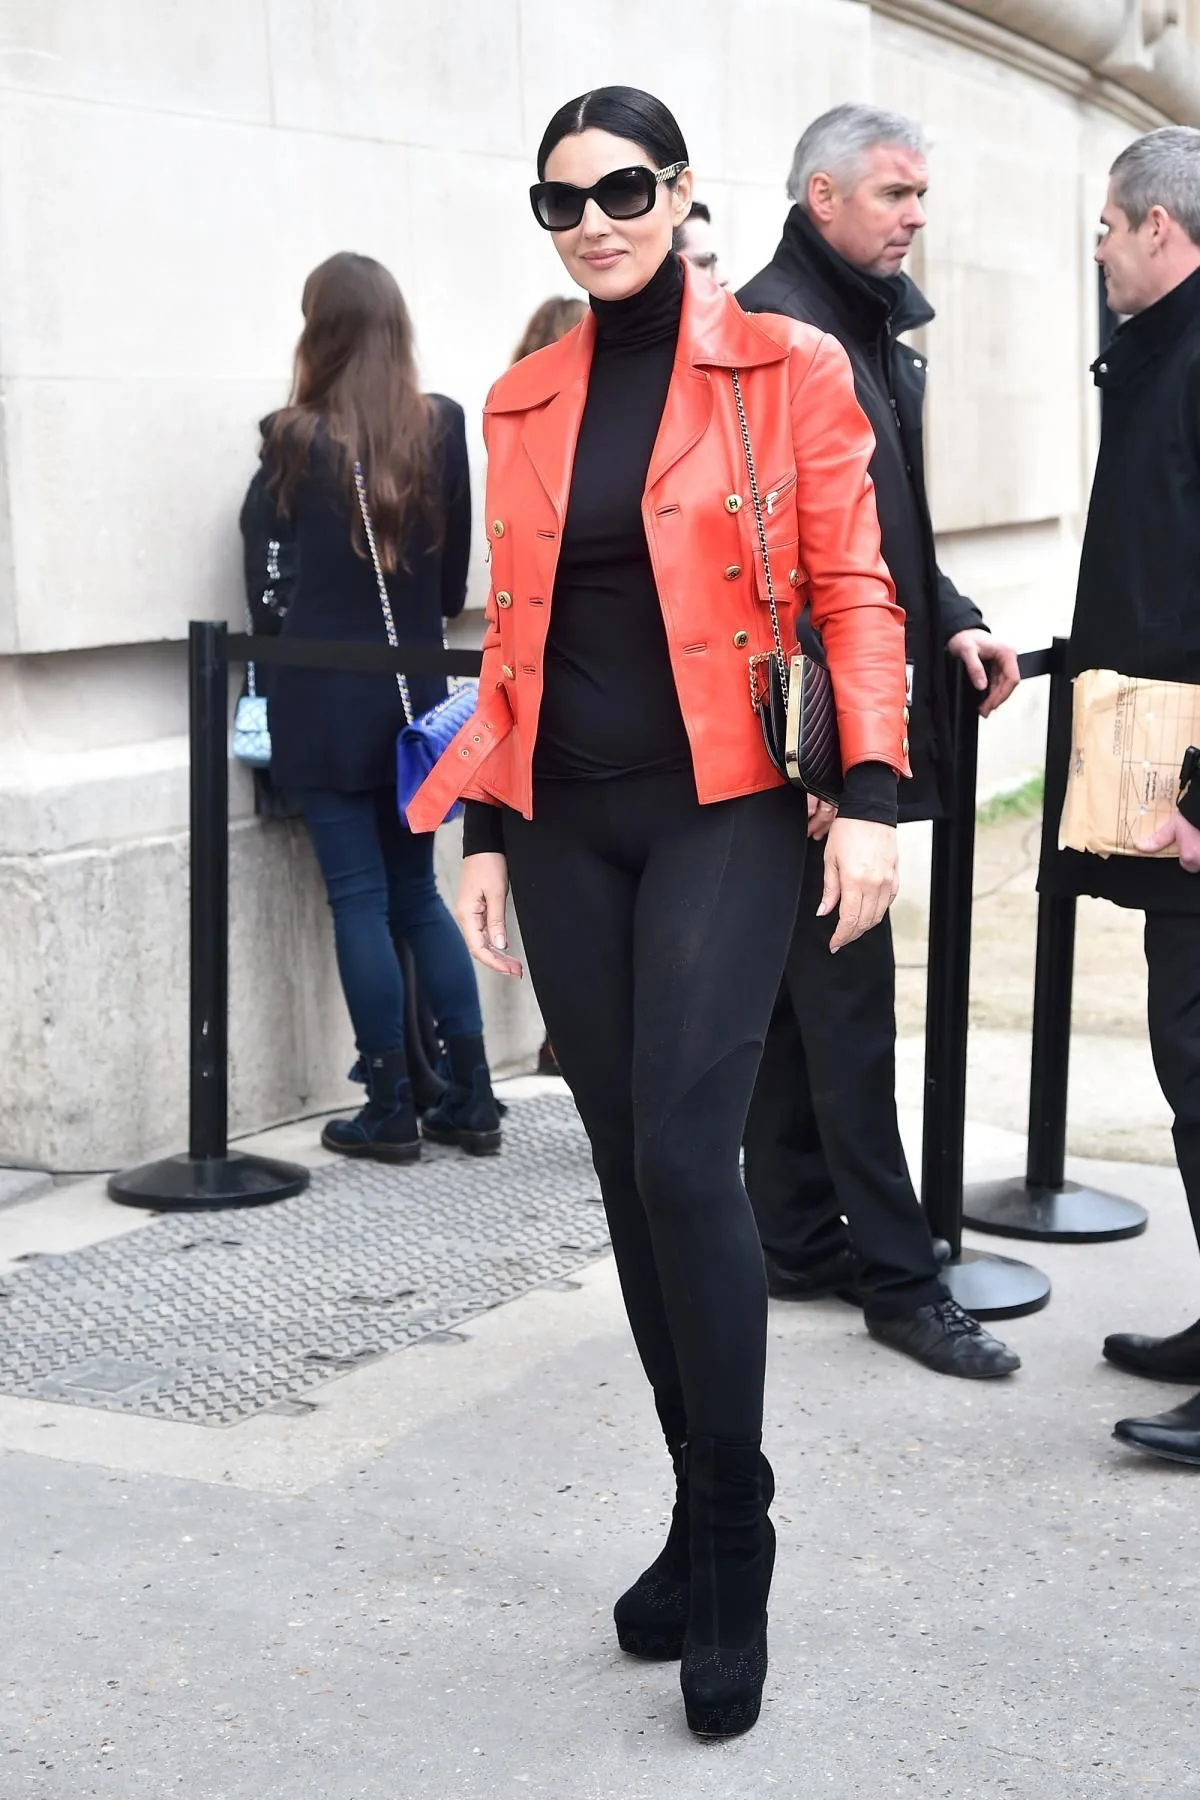 chemise et pantalon femme noir et veste rouge exemple comment s habiller à 50 ans